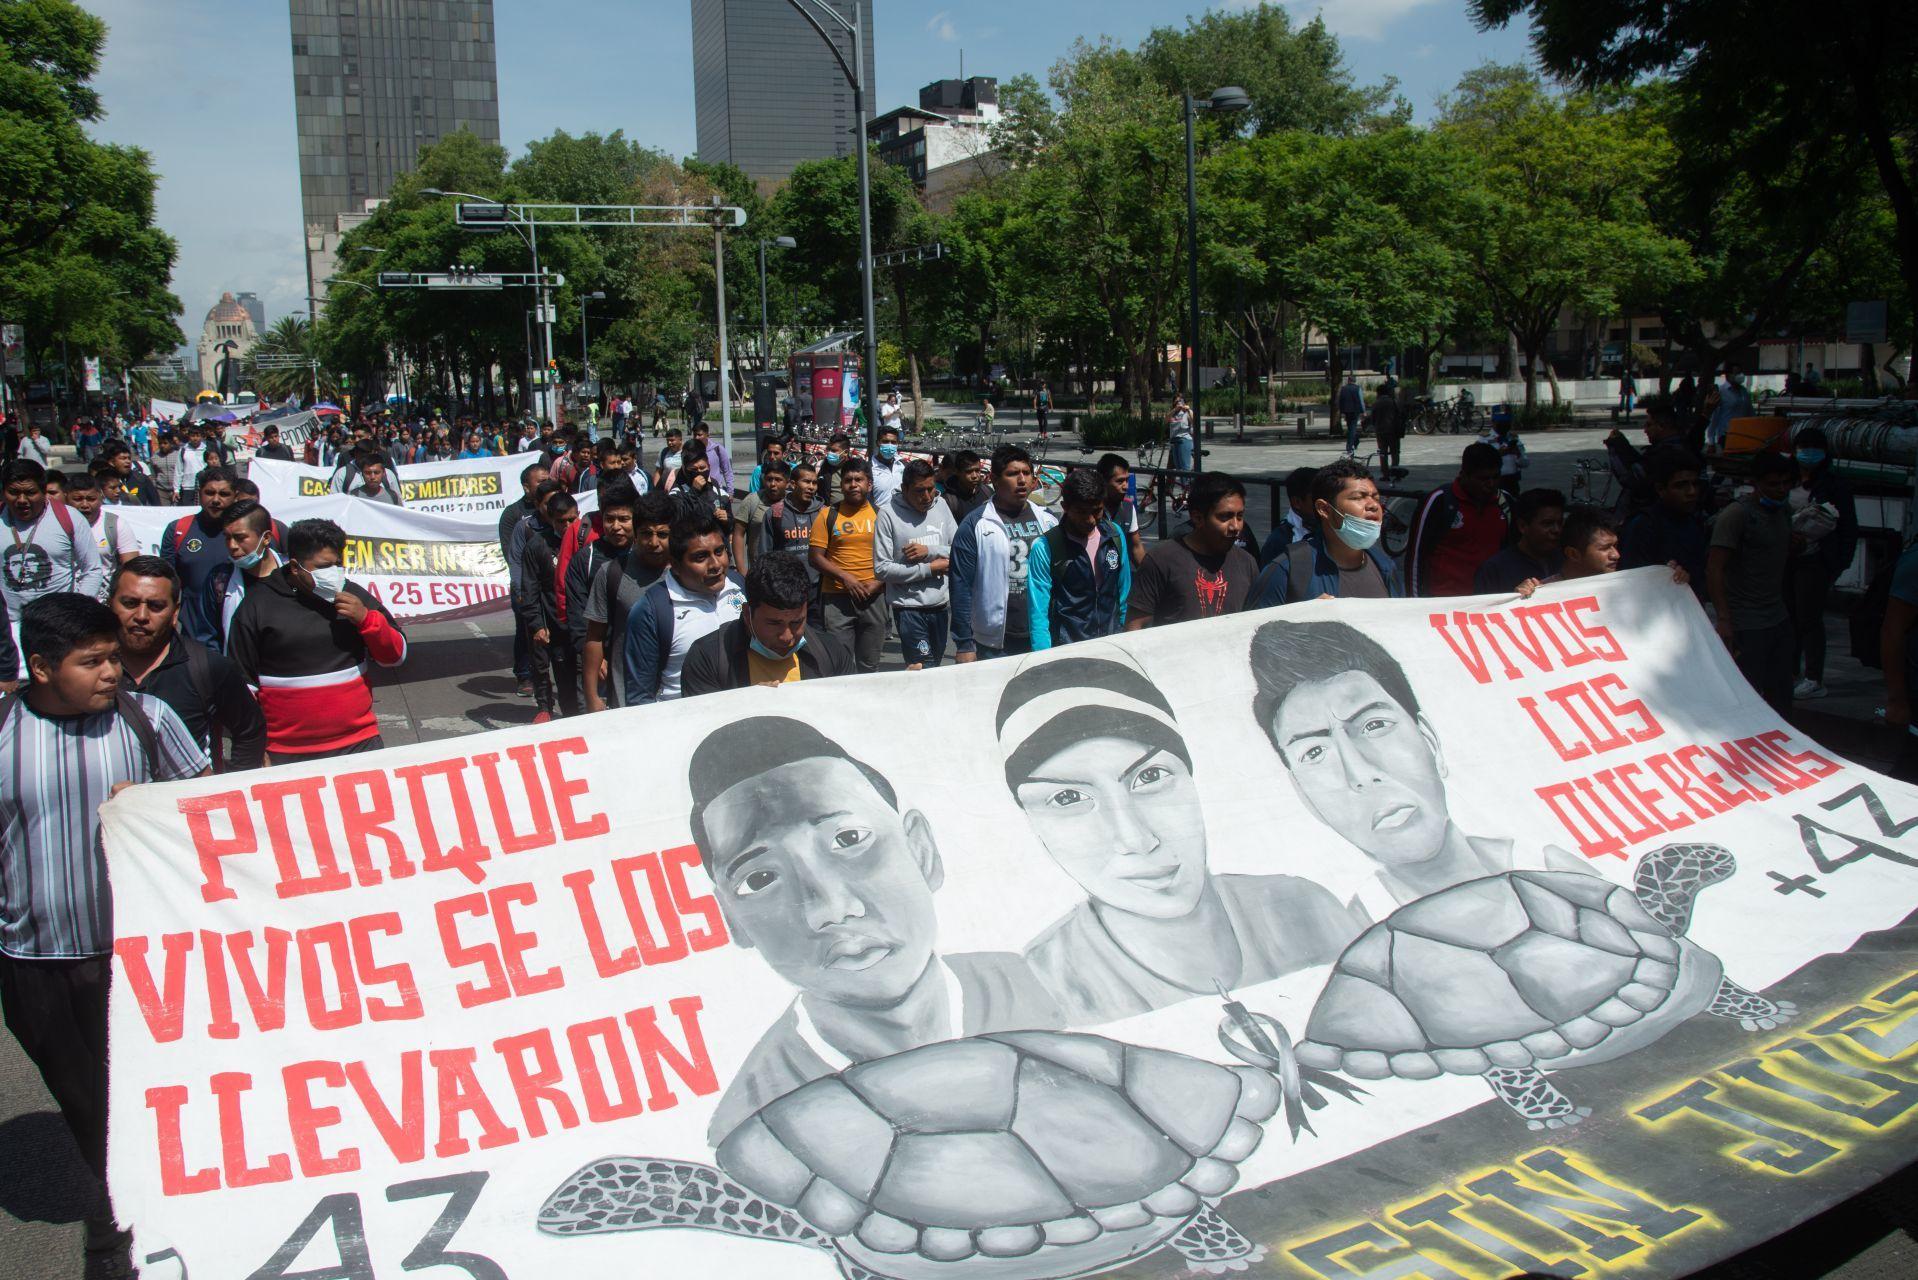 Juez dicta auto de formal prisión en contra de tres militares señalados por caso Ayotzinapa